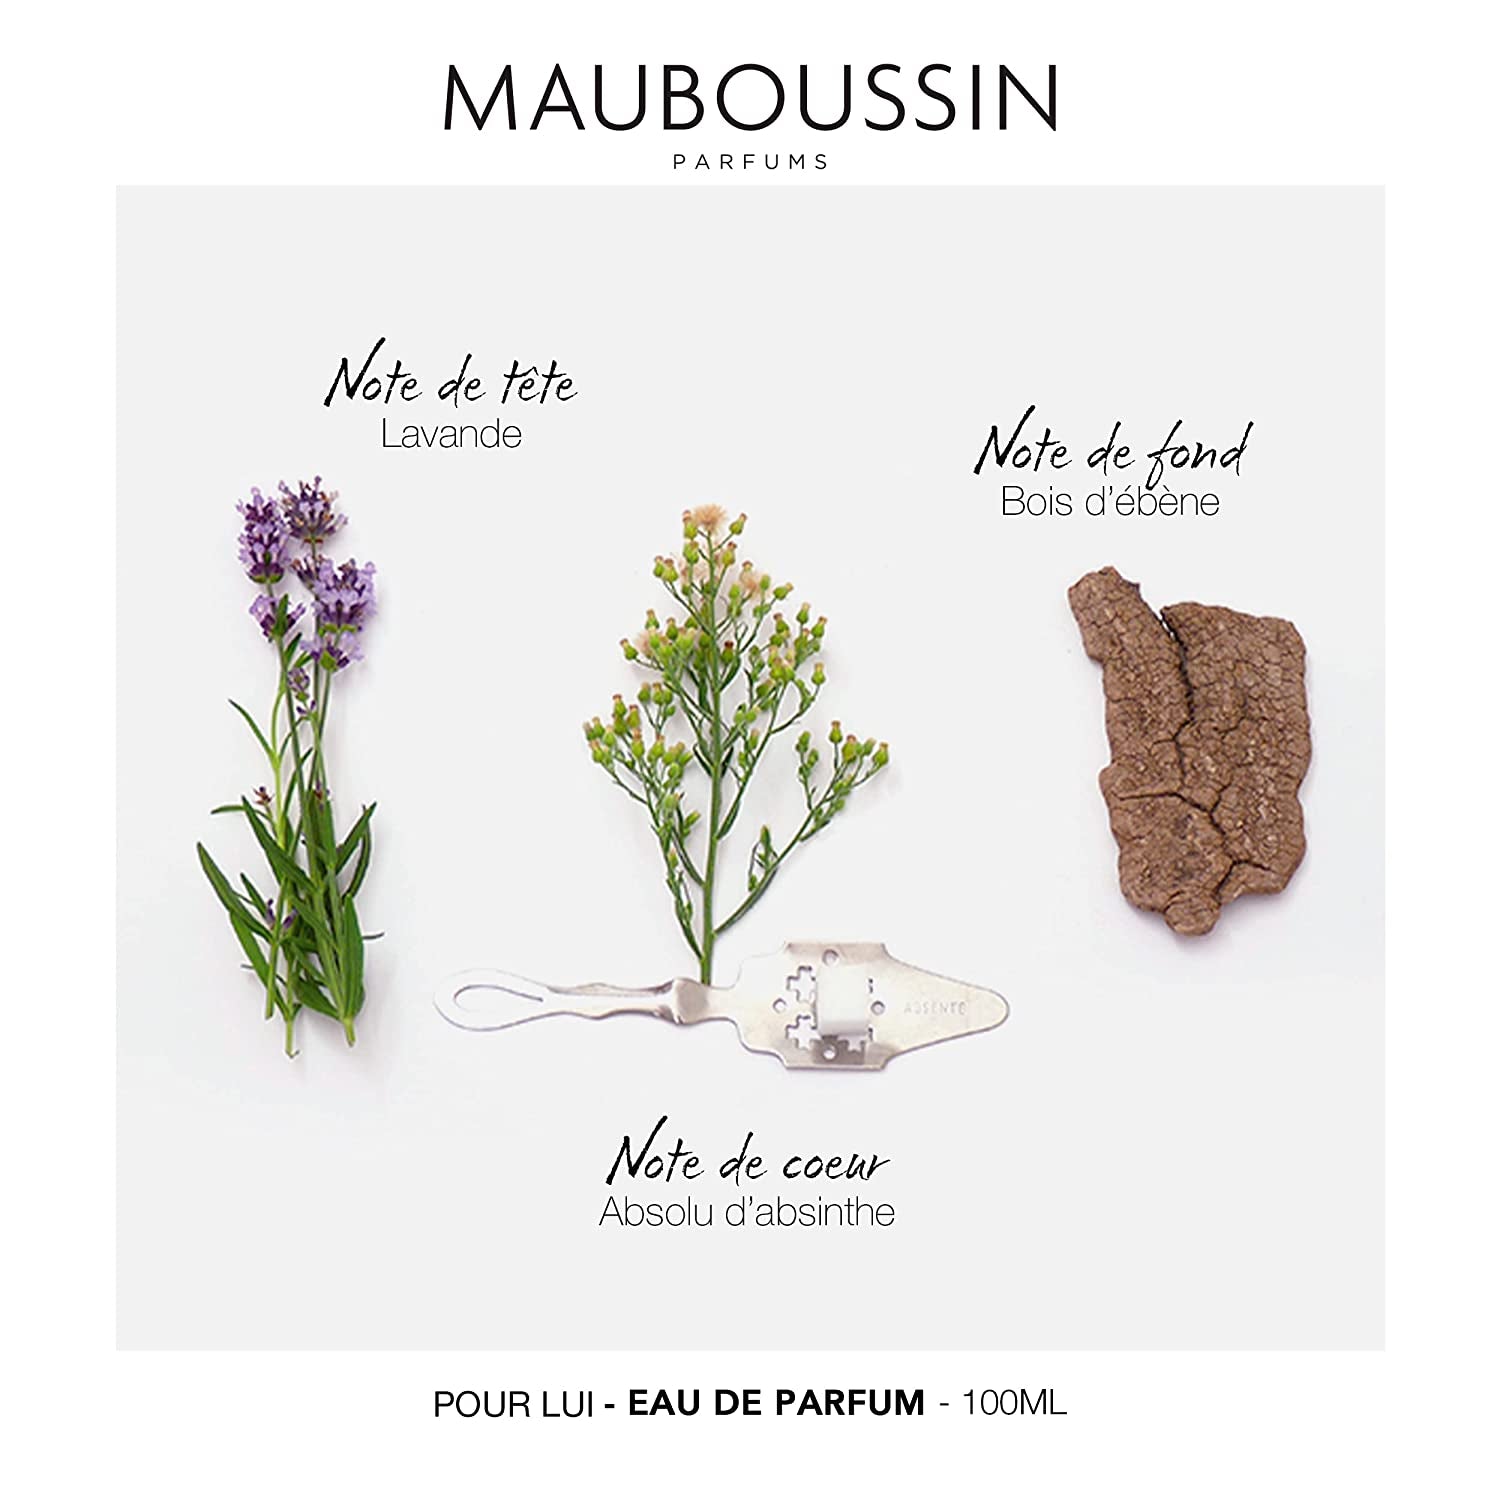 Mauboussin - Pour Lui 100ml (3.3 Fl Oz) - Eau de Parfum for Men - Ferny & Modern Scents